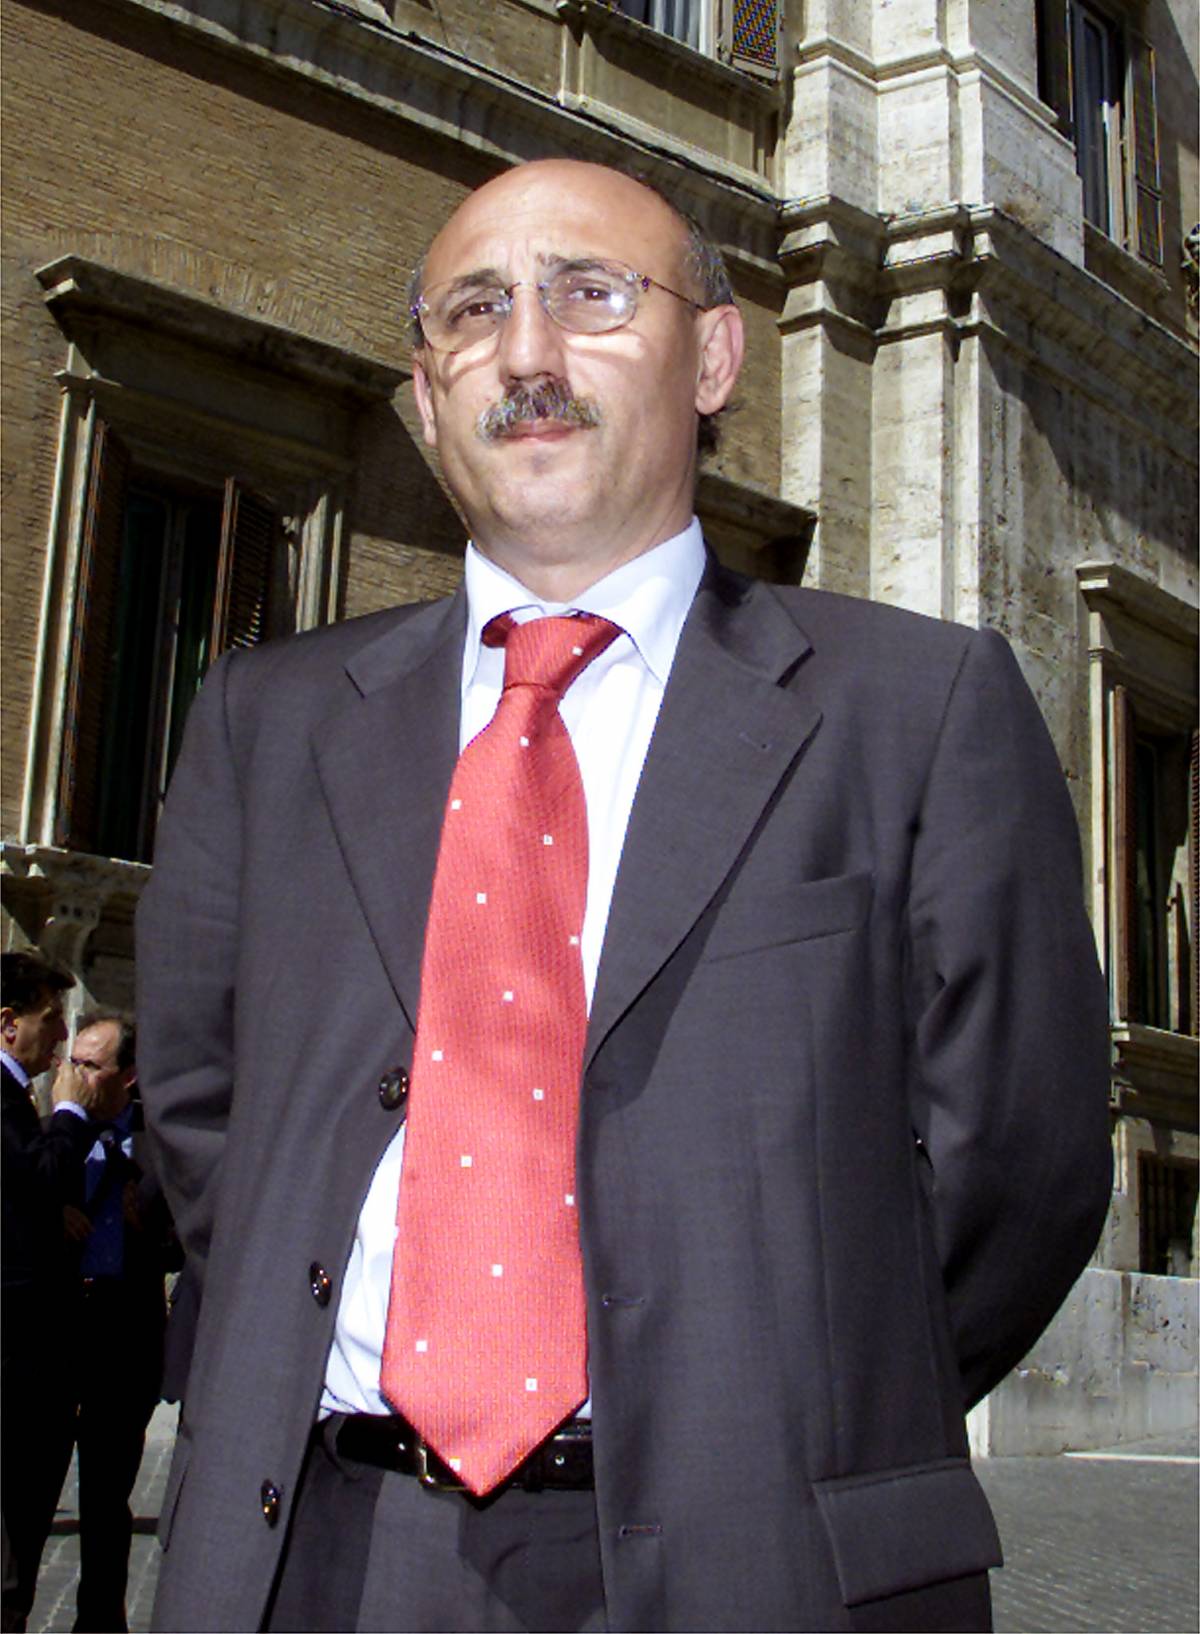 Morto Vincenzo Fasano, deputato Fi. Era uno dei grandi elettori